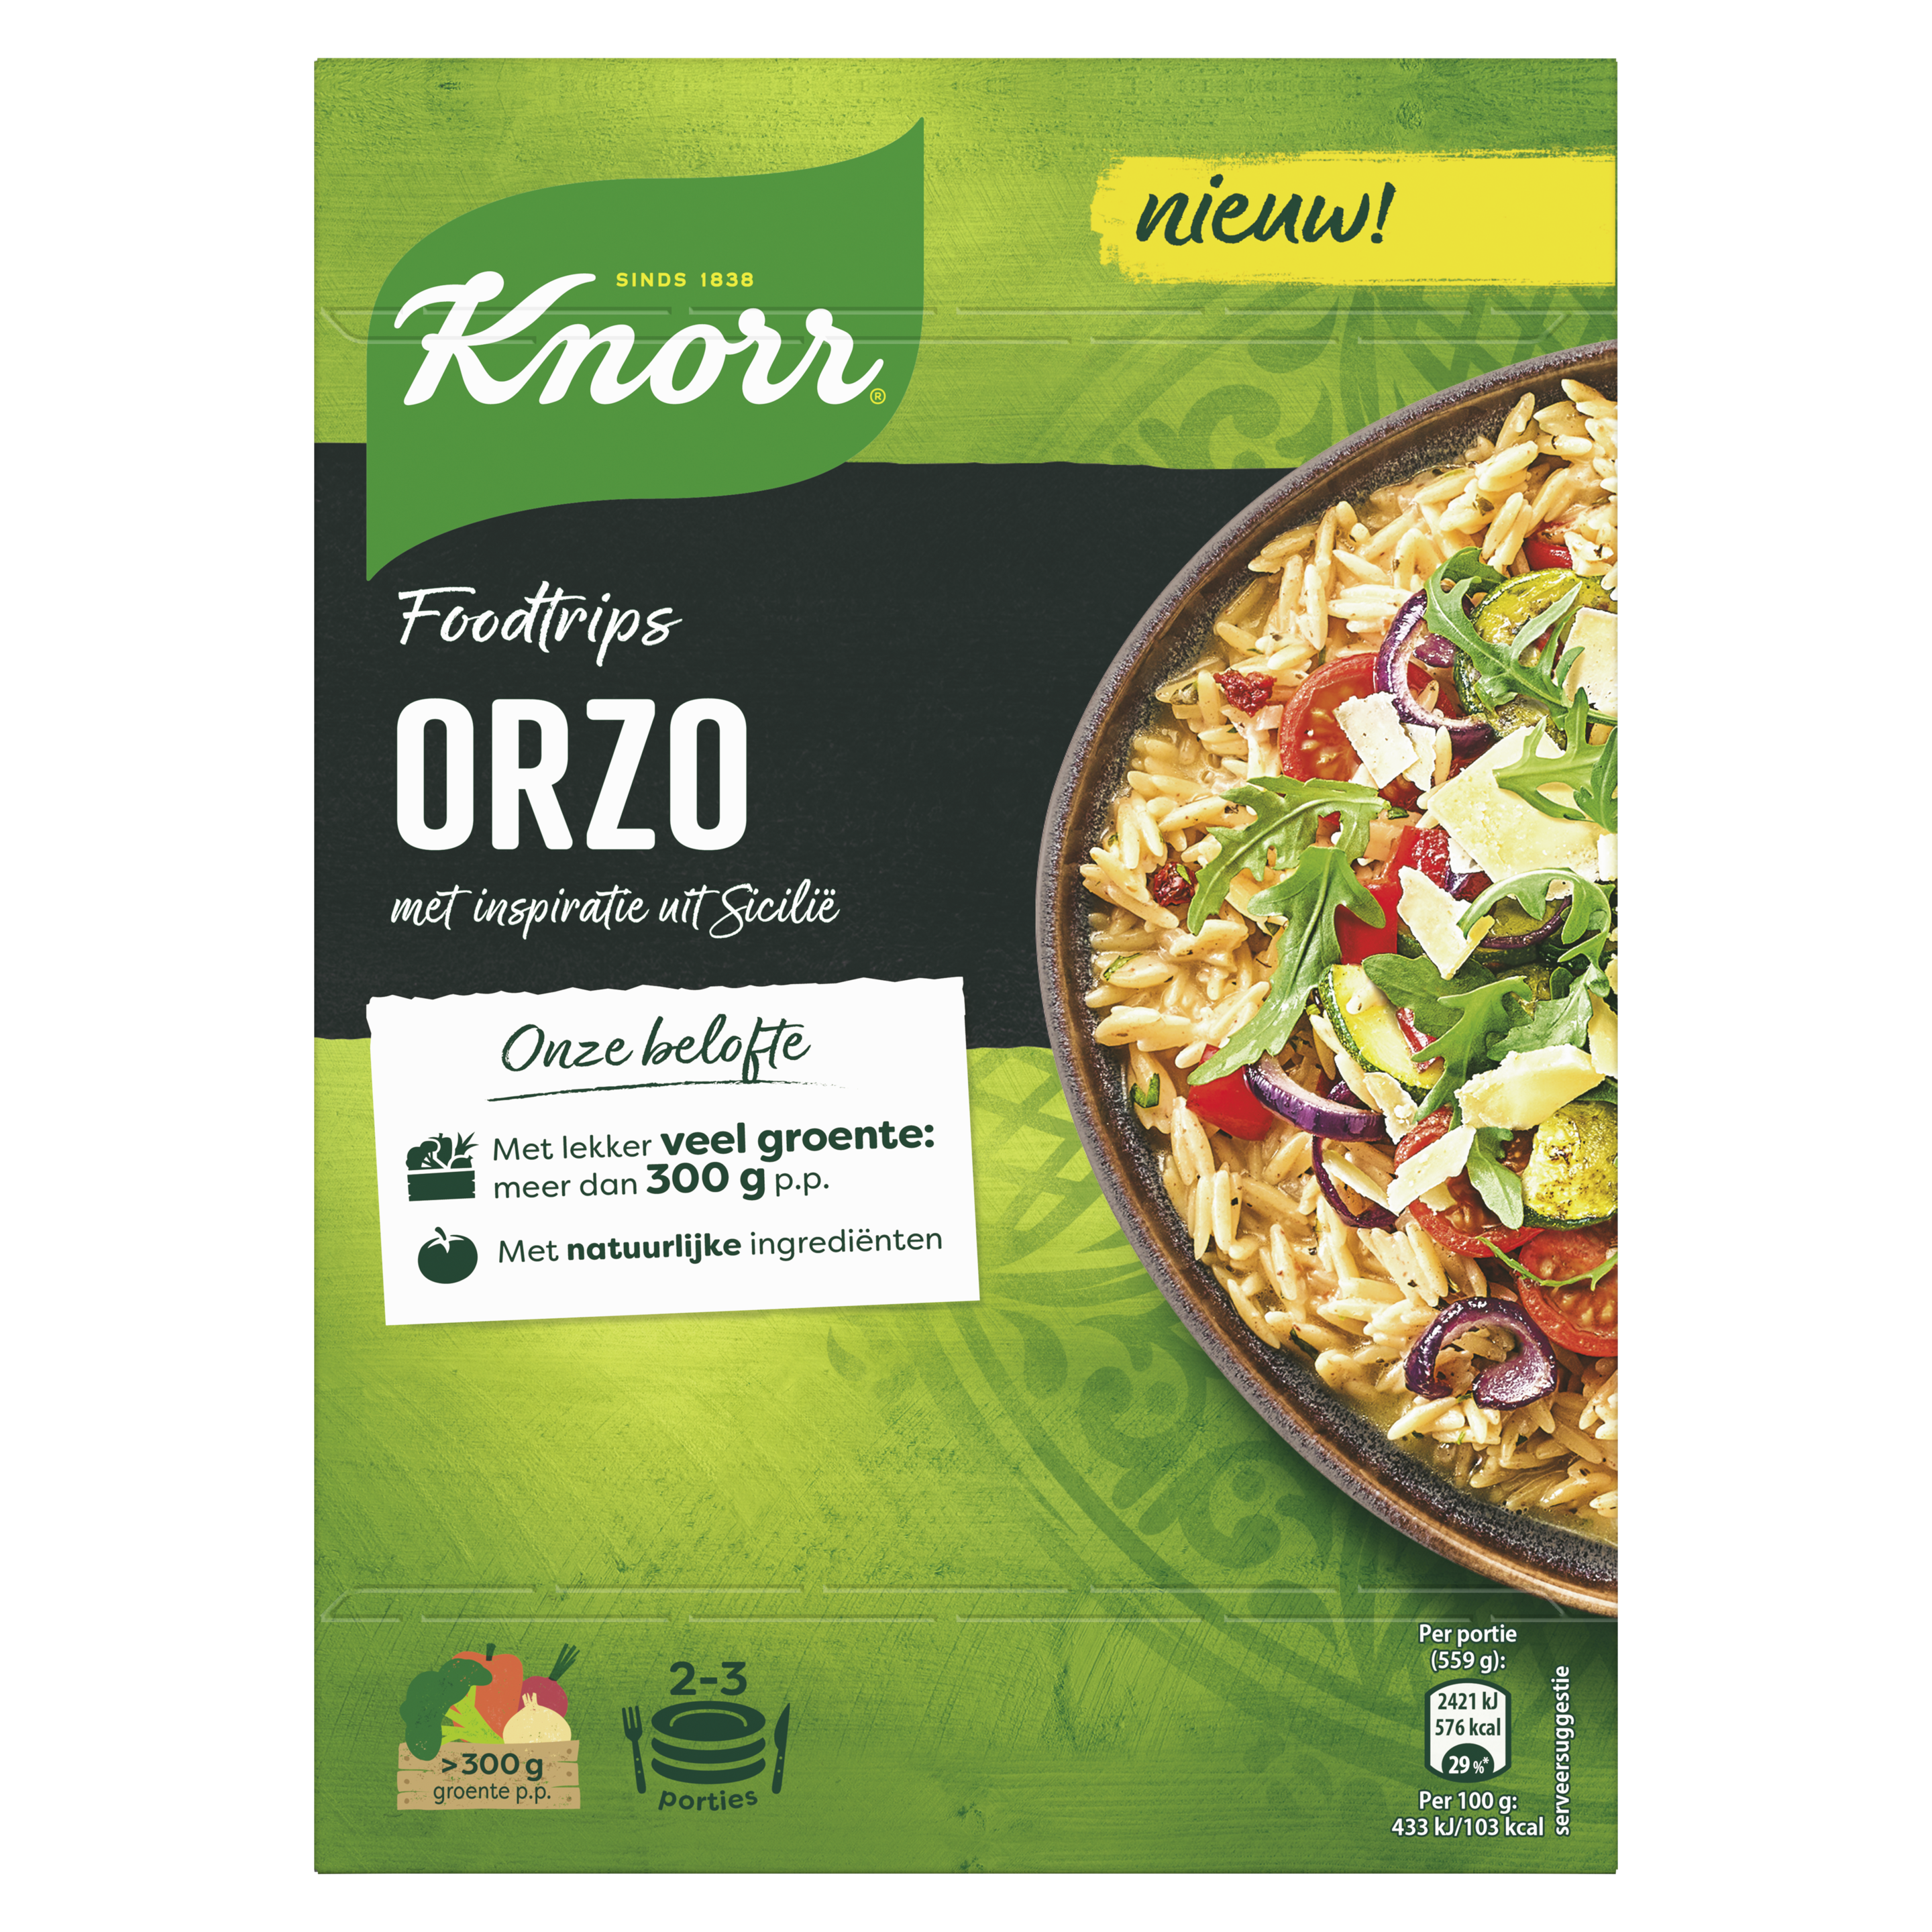 Foodtrips Orzo